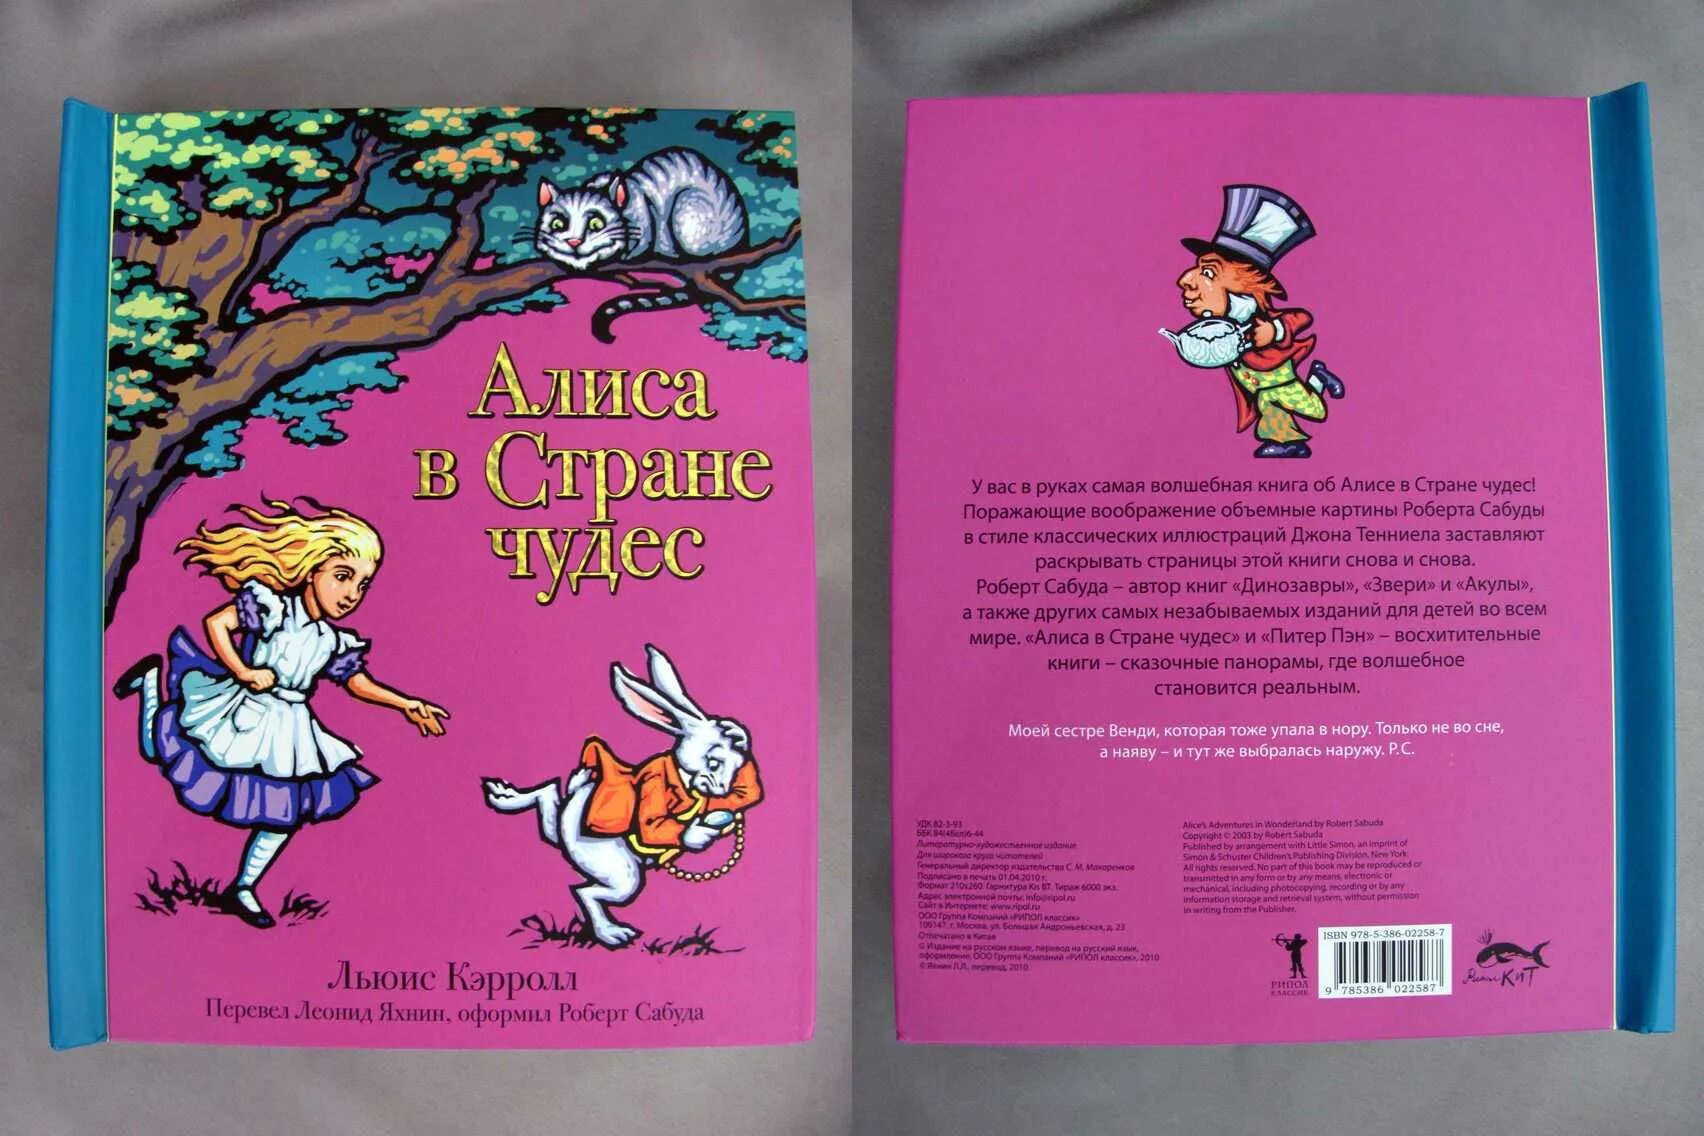 Кэрролл Льюис "Алиса в стране чудес". Алиса в стране чудес обложка книги. Книга Алиса в стране чудес. Алиса в стране чудес обложка. Читать рассказ алис